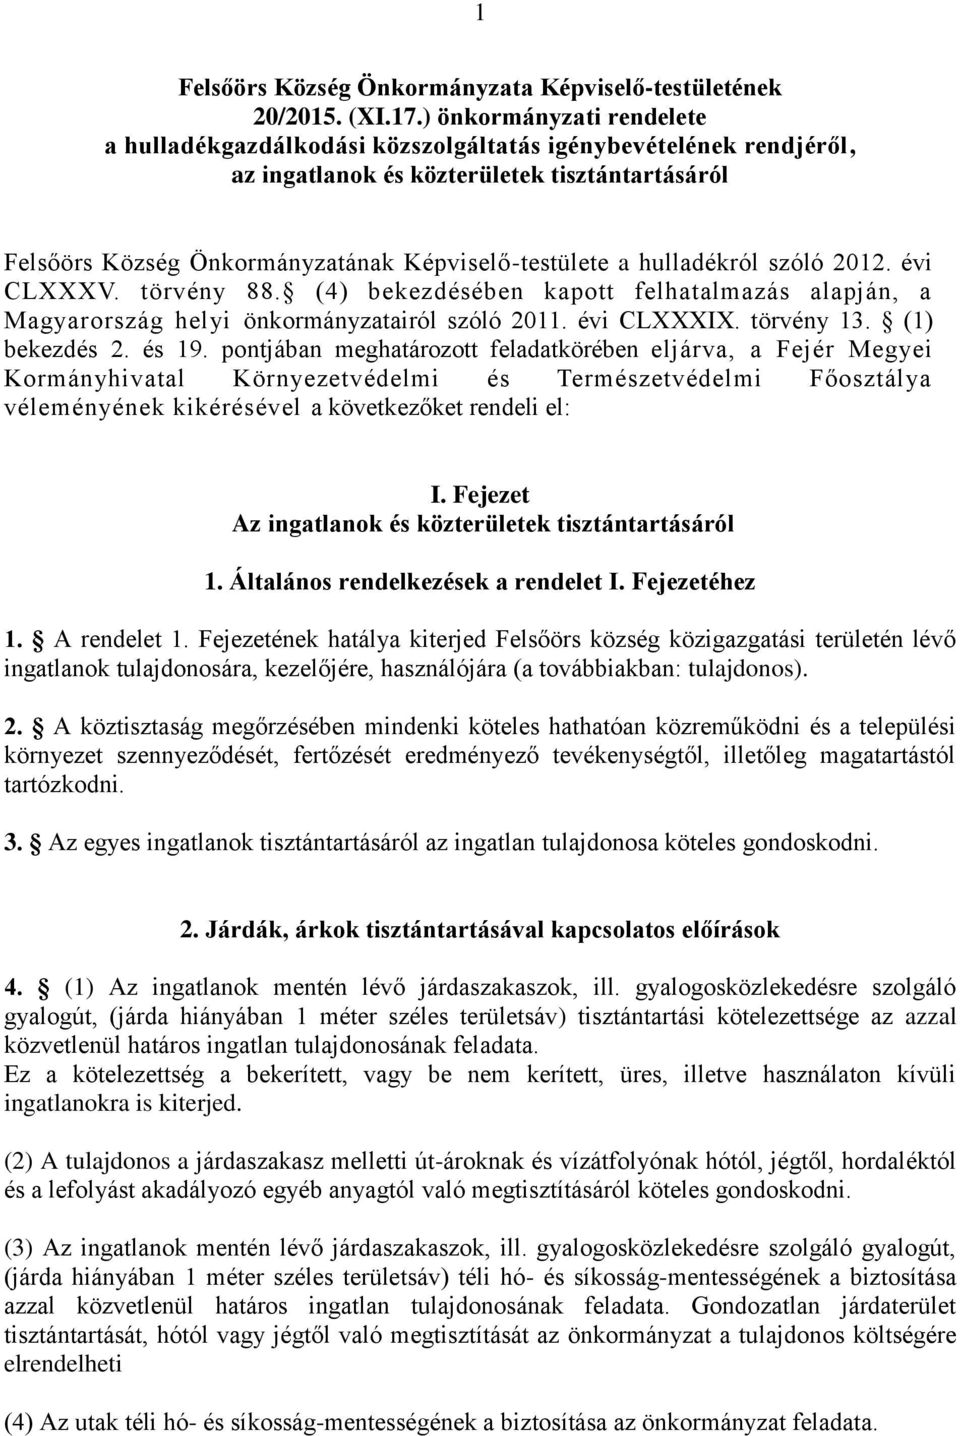 hulladékról szóló 2012. évi CLXXXV. törvény 88. (4) bekezdésében kapott felhatalmazás alapján, a Magyarország helyi önkormányzatairól szóló 2011. évi CLXXXIX. törvény 13. (1) bekezdés 2. és 19.